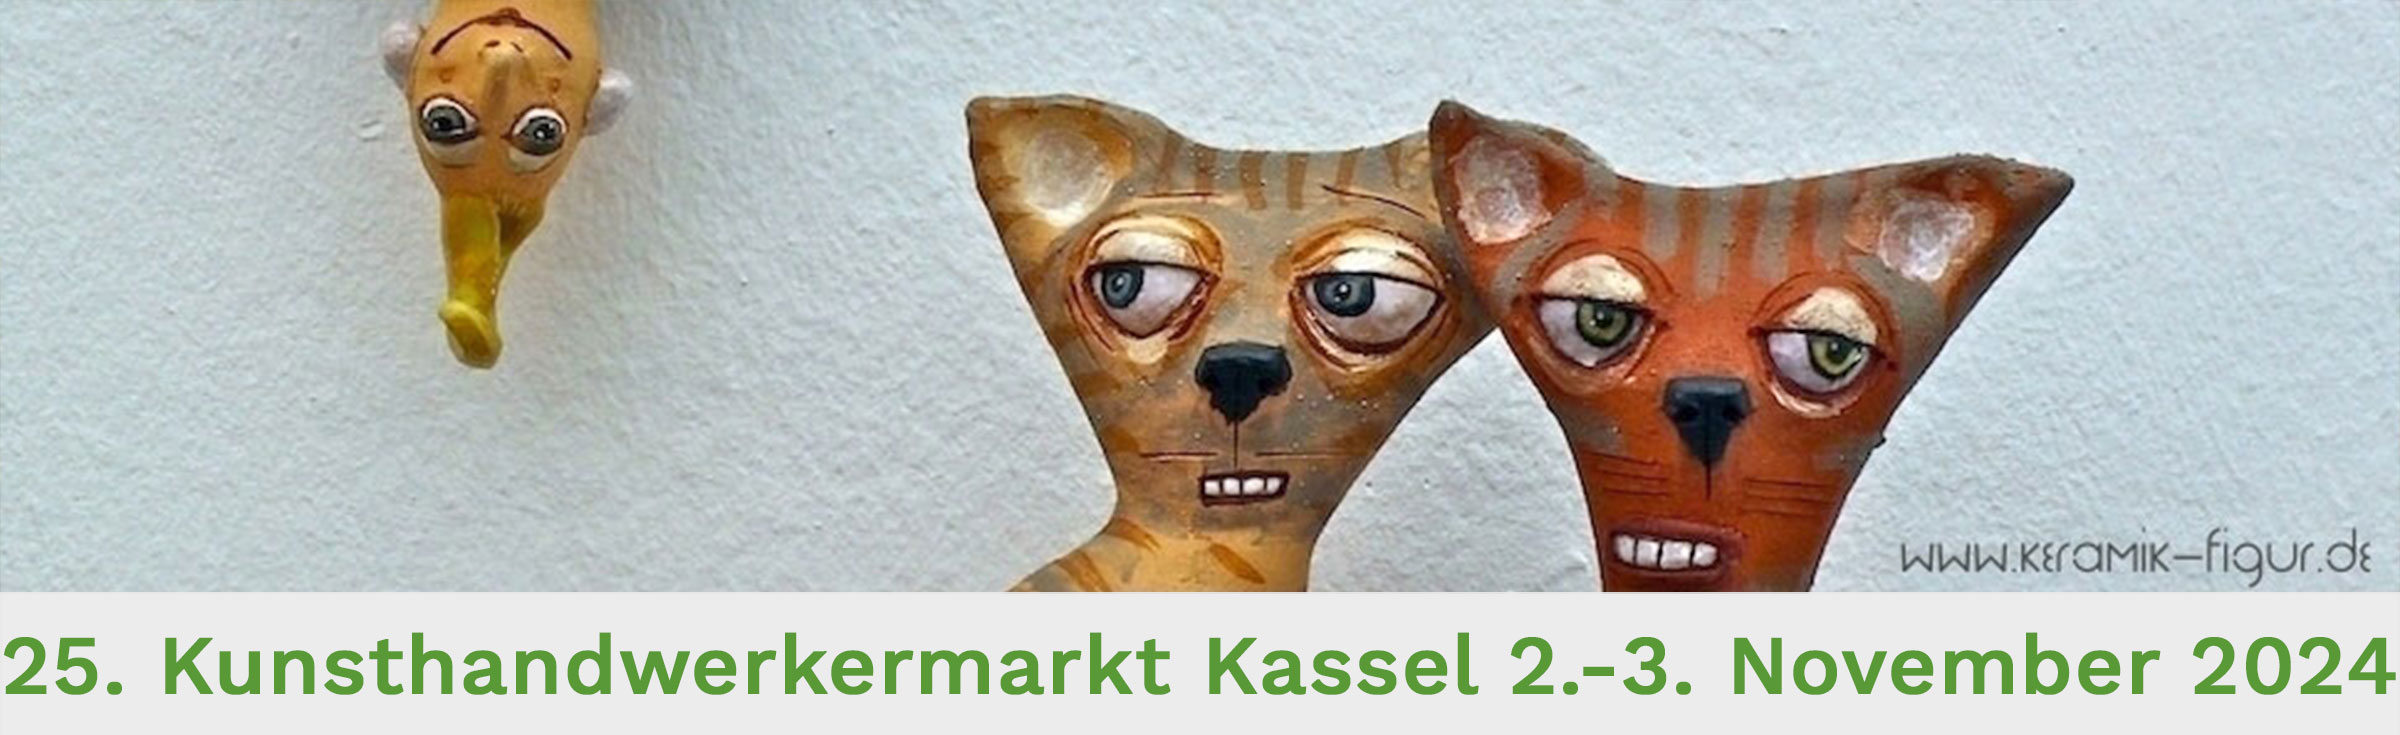 Kunsthandwerkermarkt Kassel